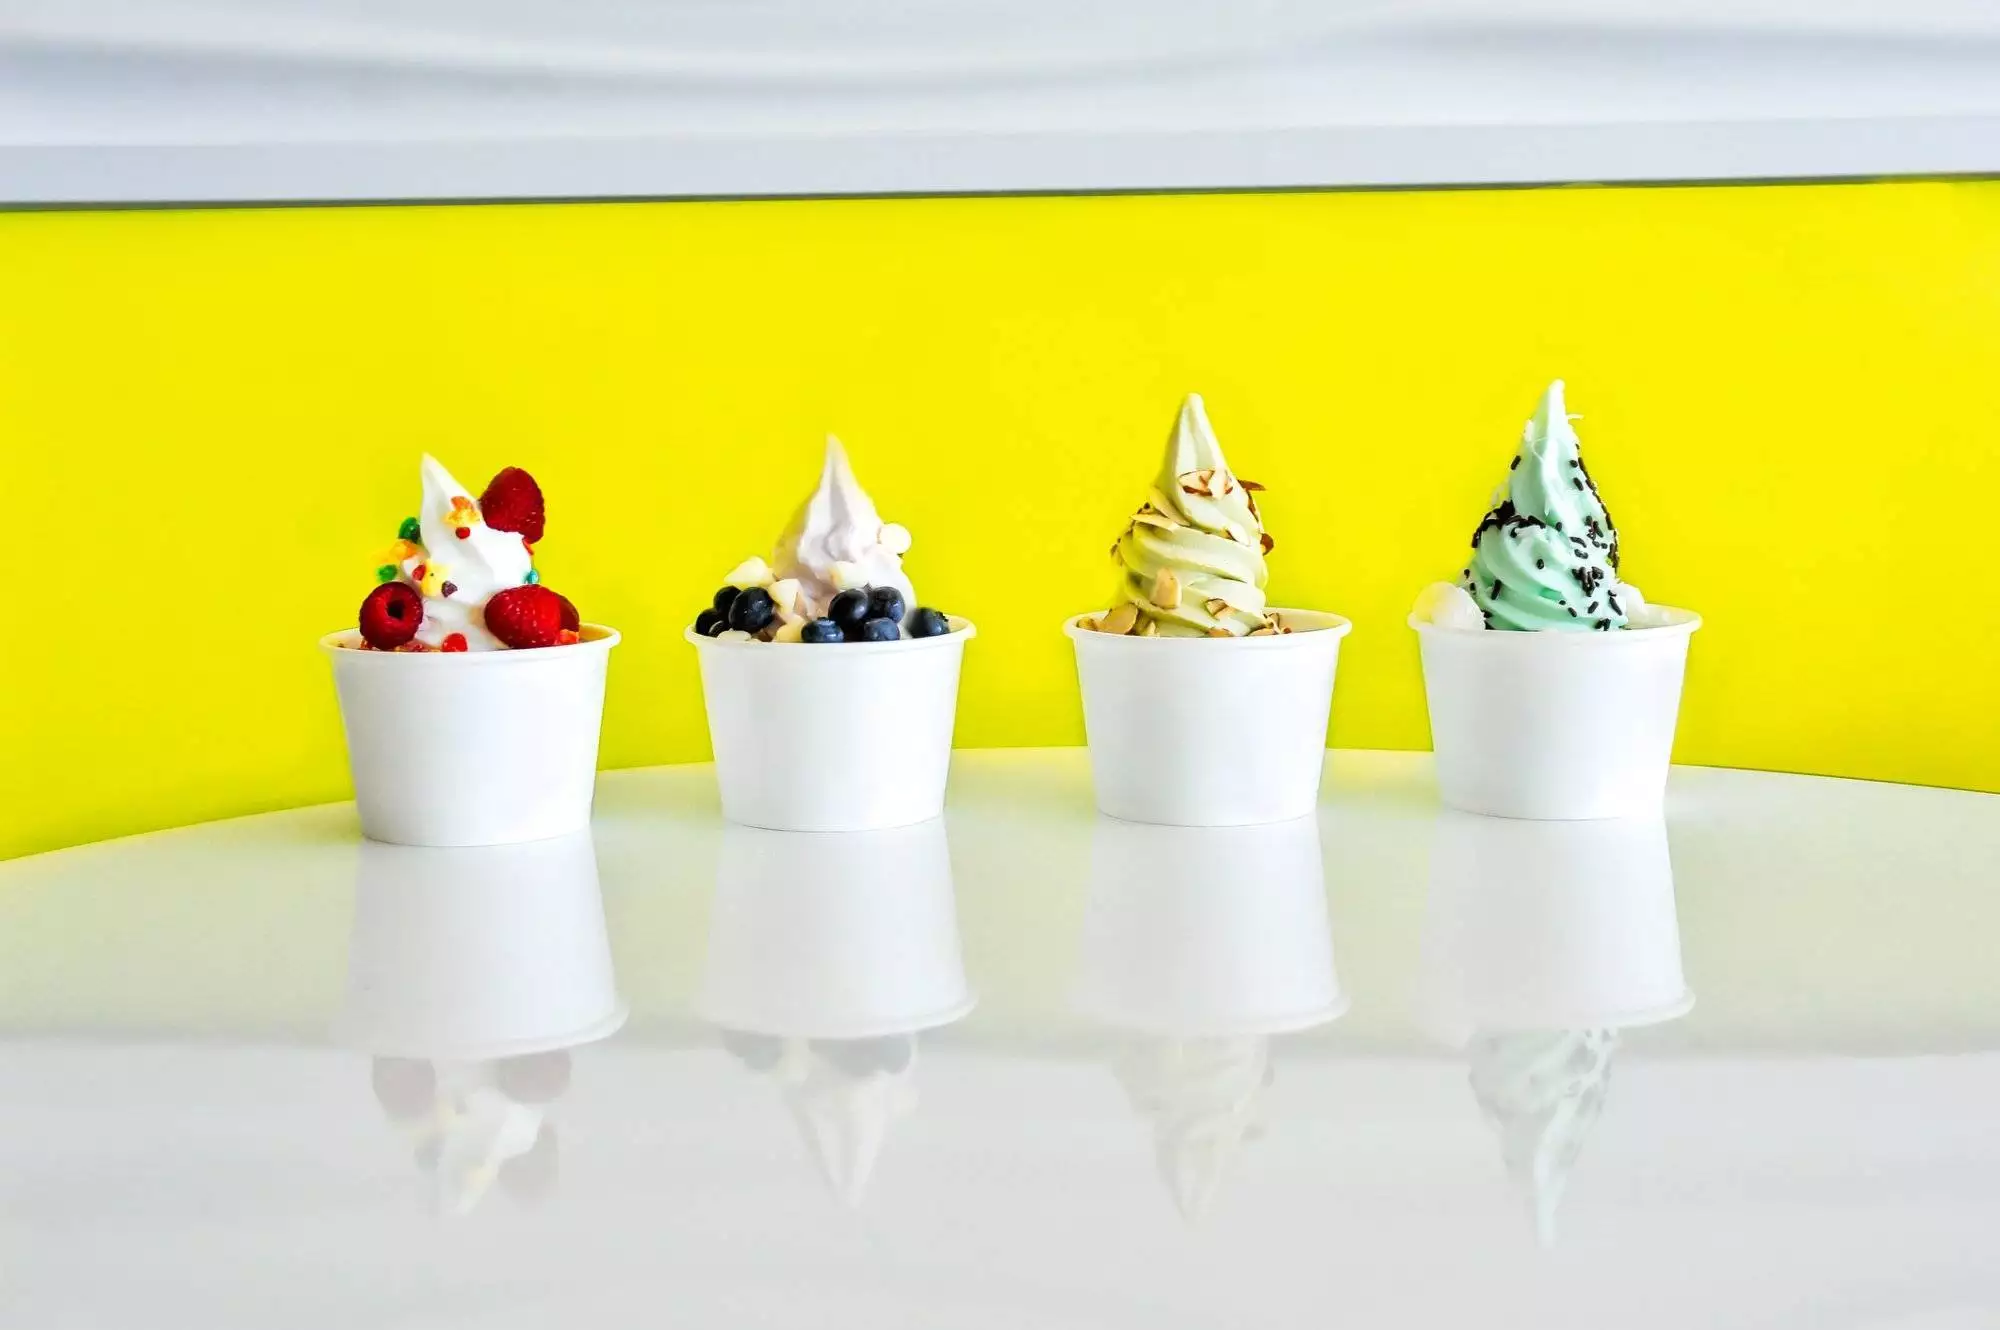 Frozen Yogurt Variety Line up